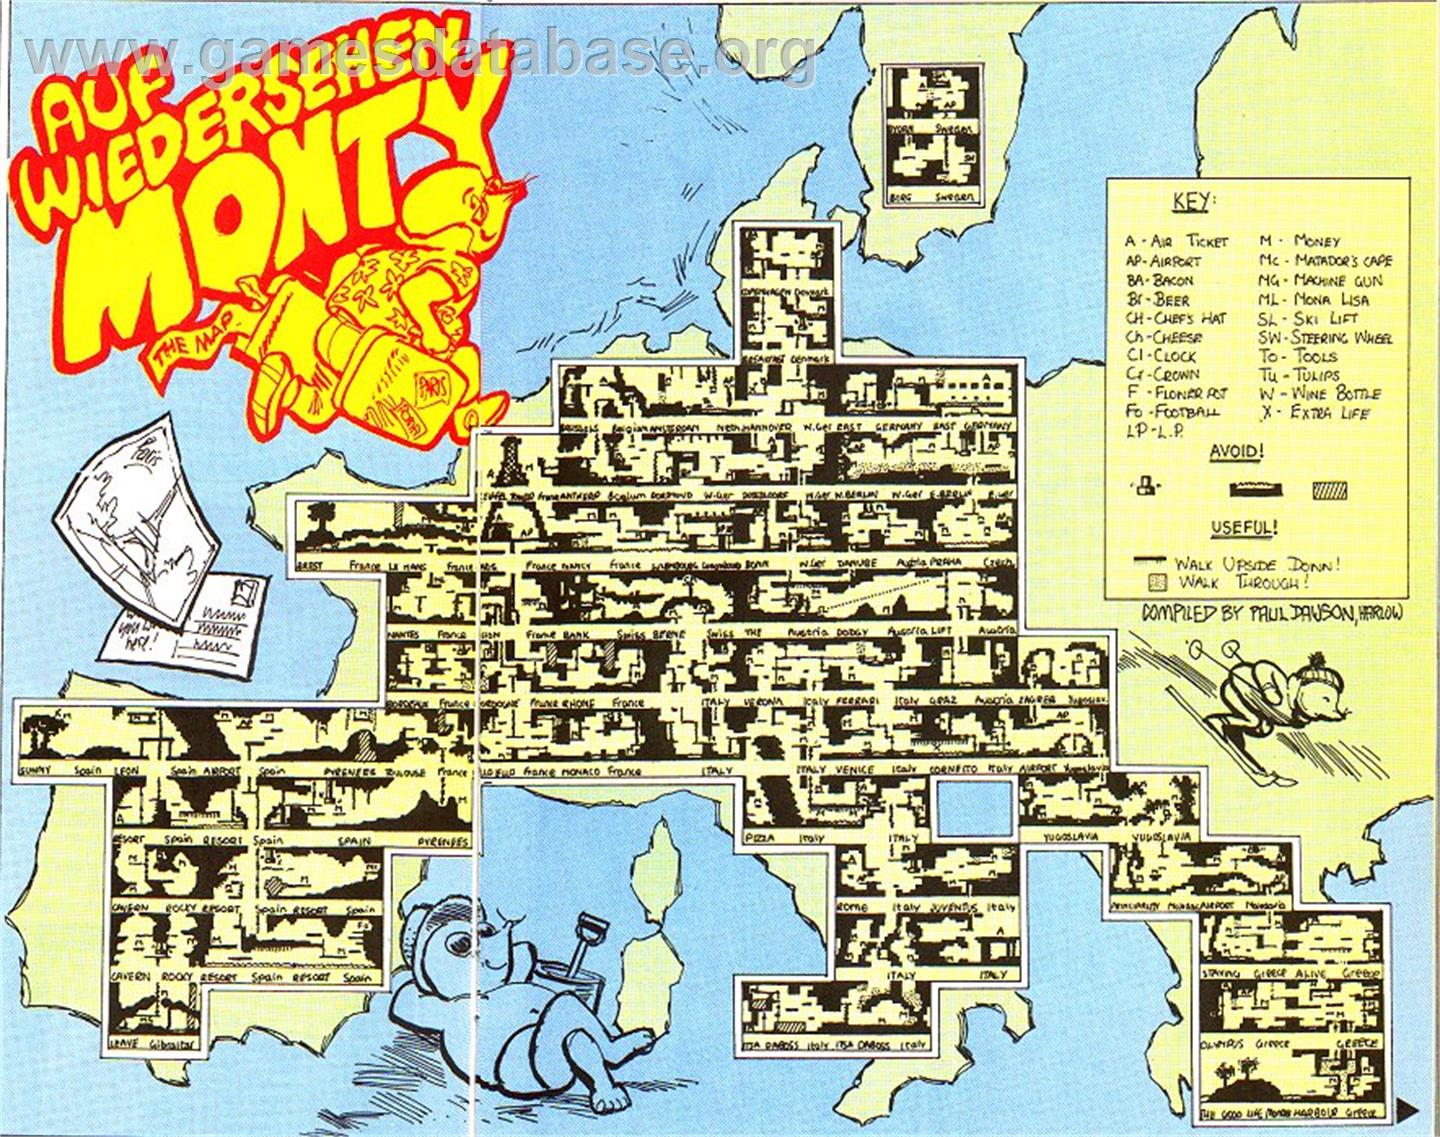 Auf Wiedersehen Monty - Amstrad CPC - Artwork - Map